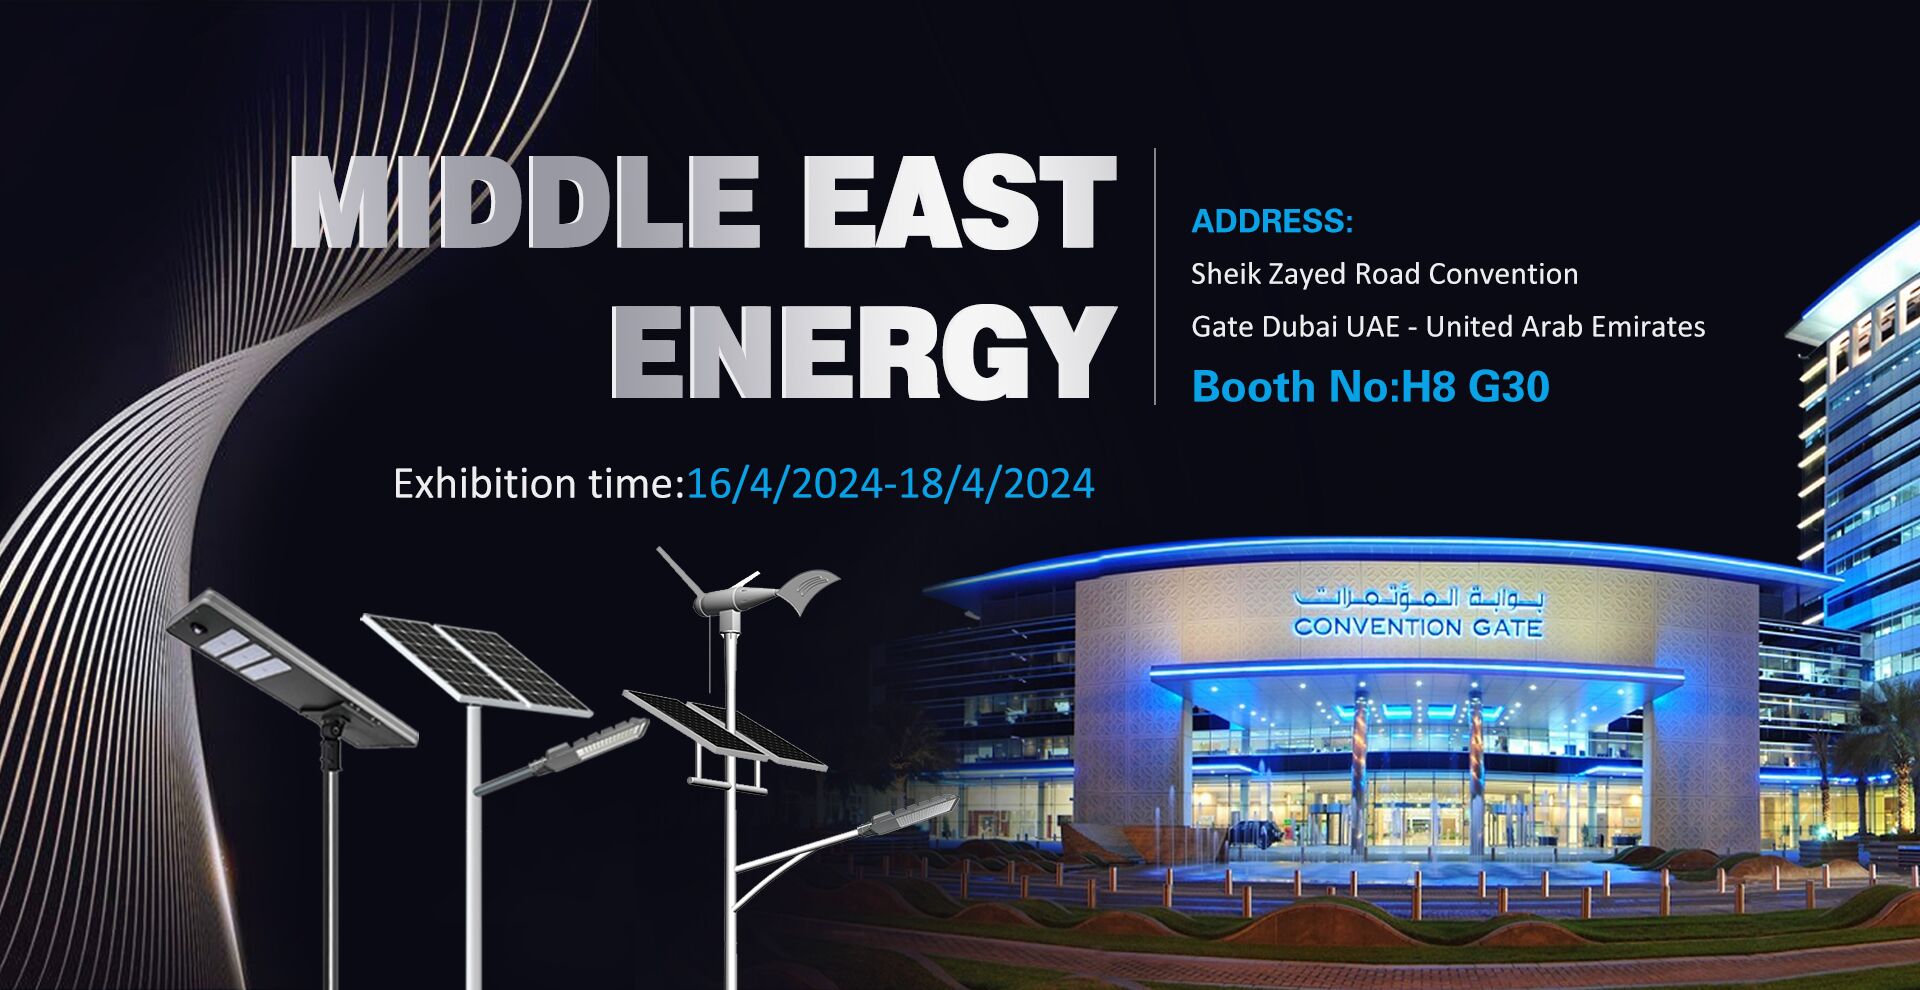 Middle East Energy, prihajamo！